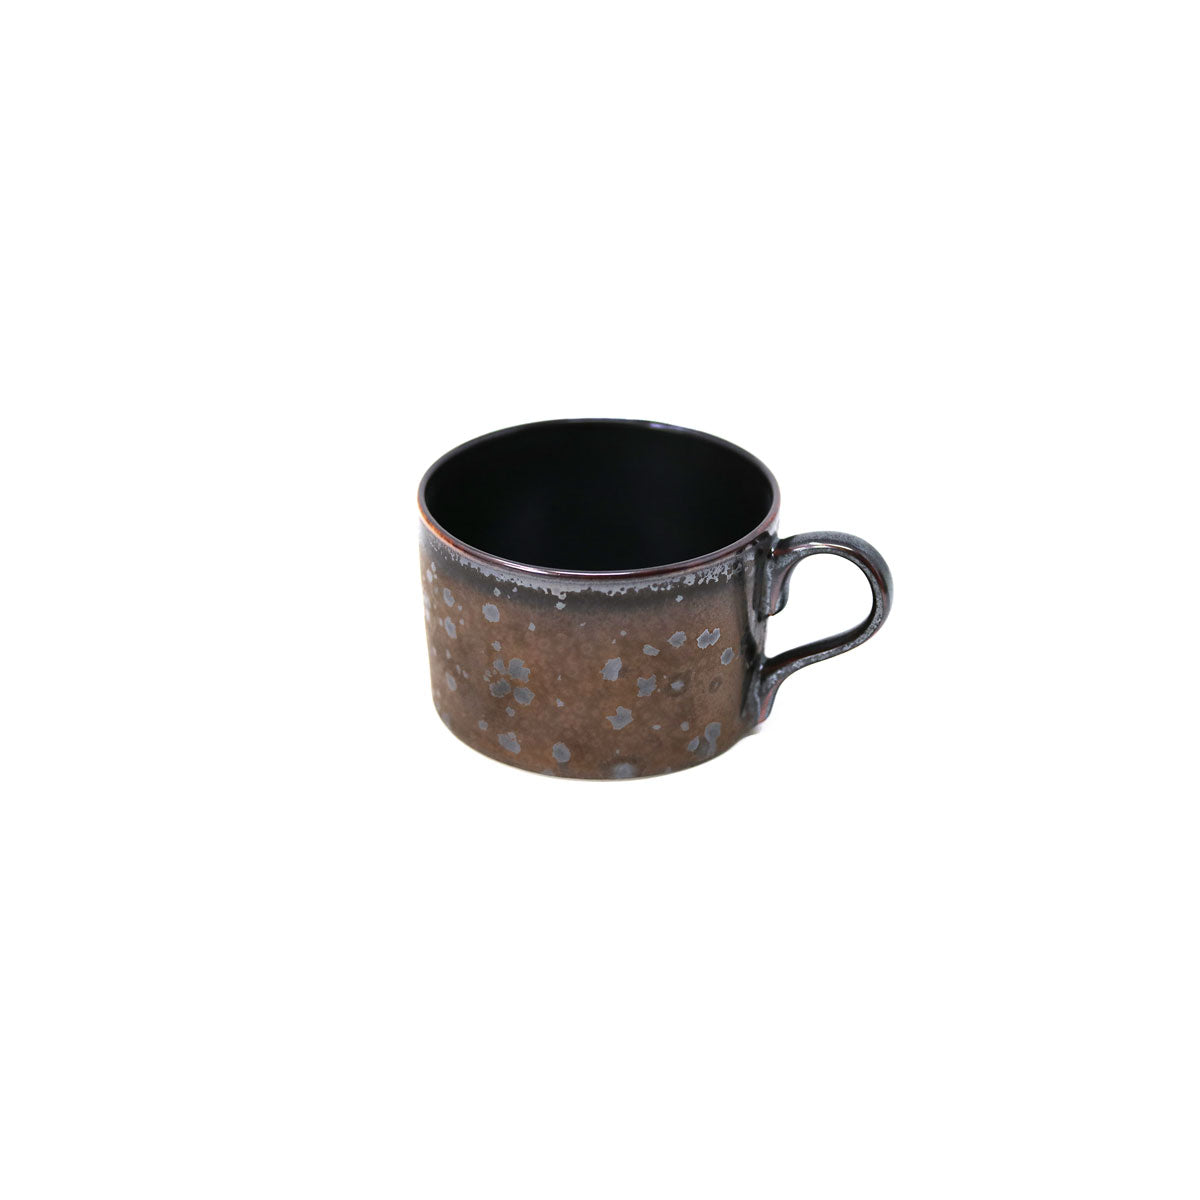 AGUIRRE - Tea set (cup & saucer)